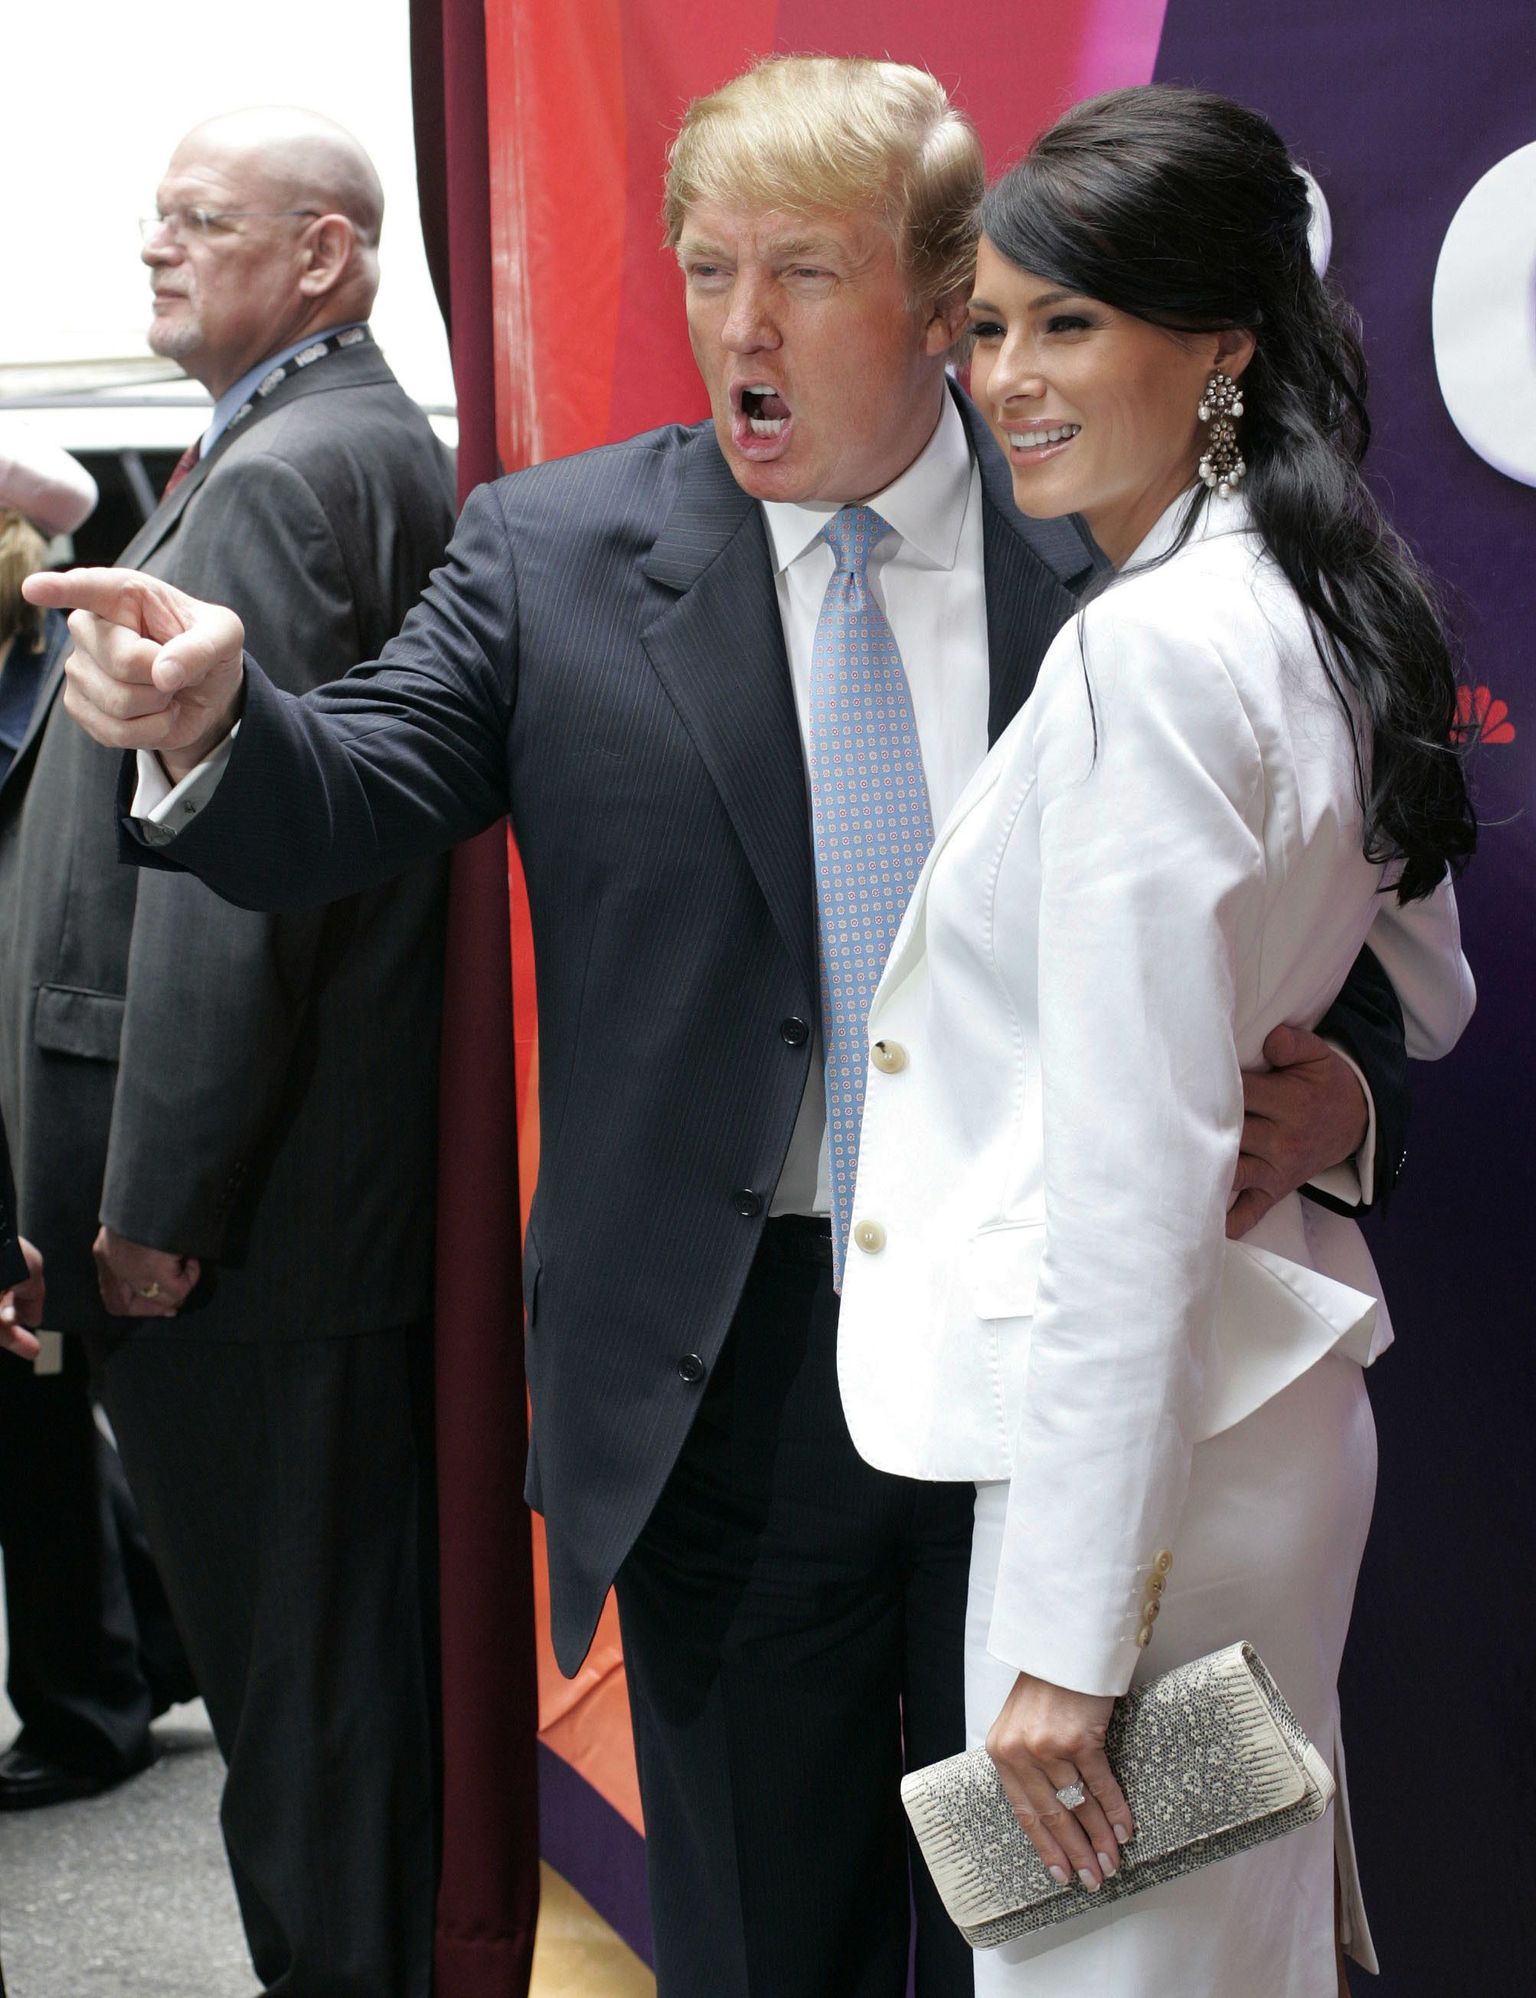 Tähelend kogub tuure: Donald Trump 2004. aastal koos toonase mõrsja Melania Knaussiga oma tõsielusarja «The Apprentice» esitlusel New Yorgis.